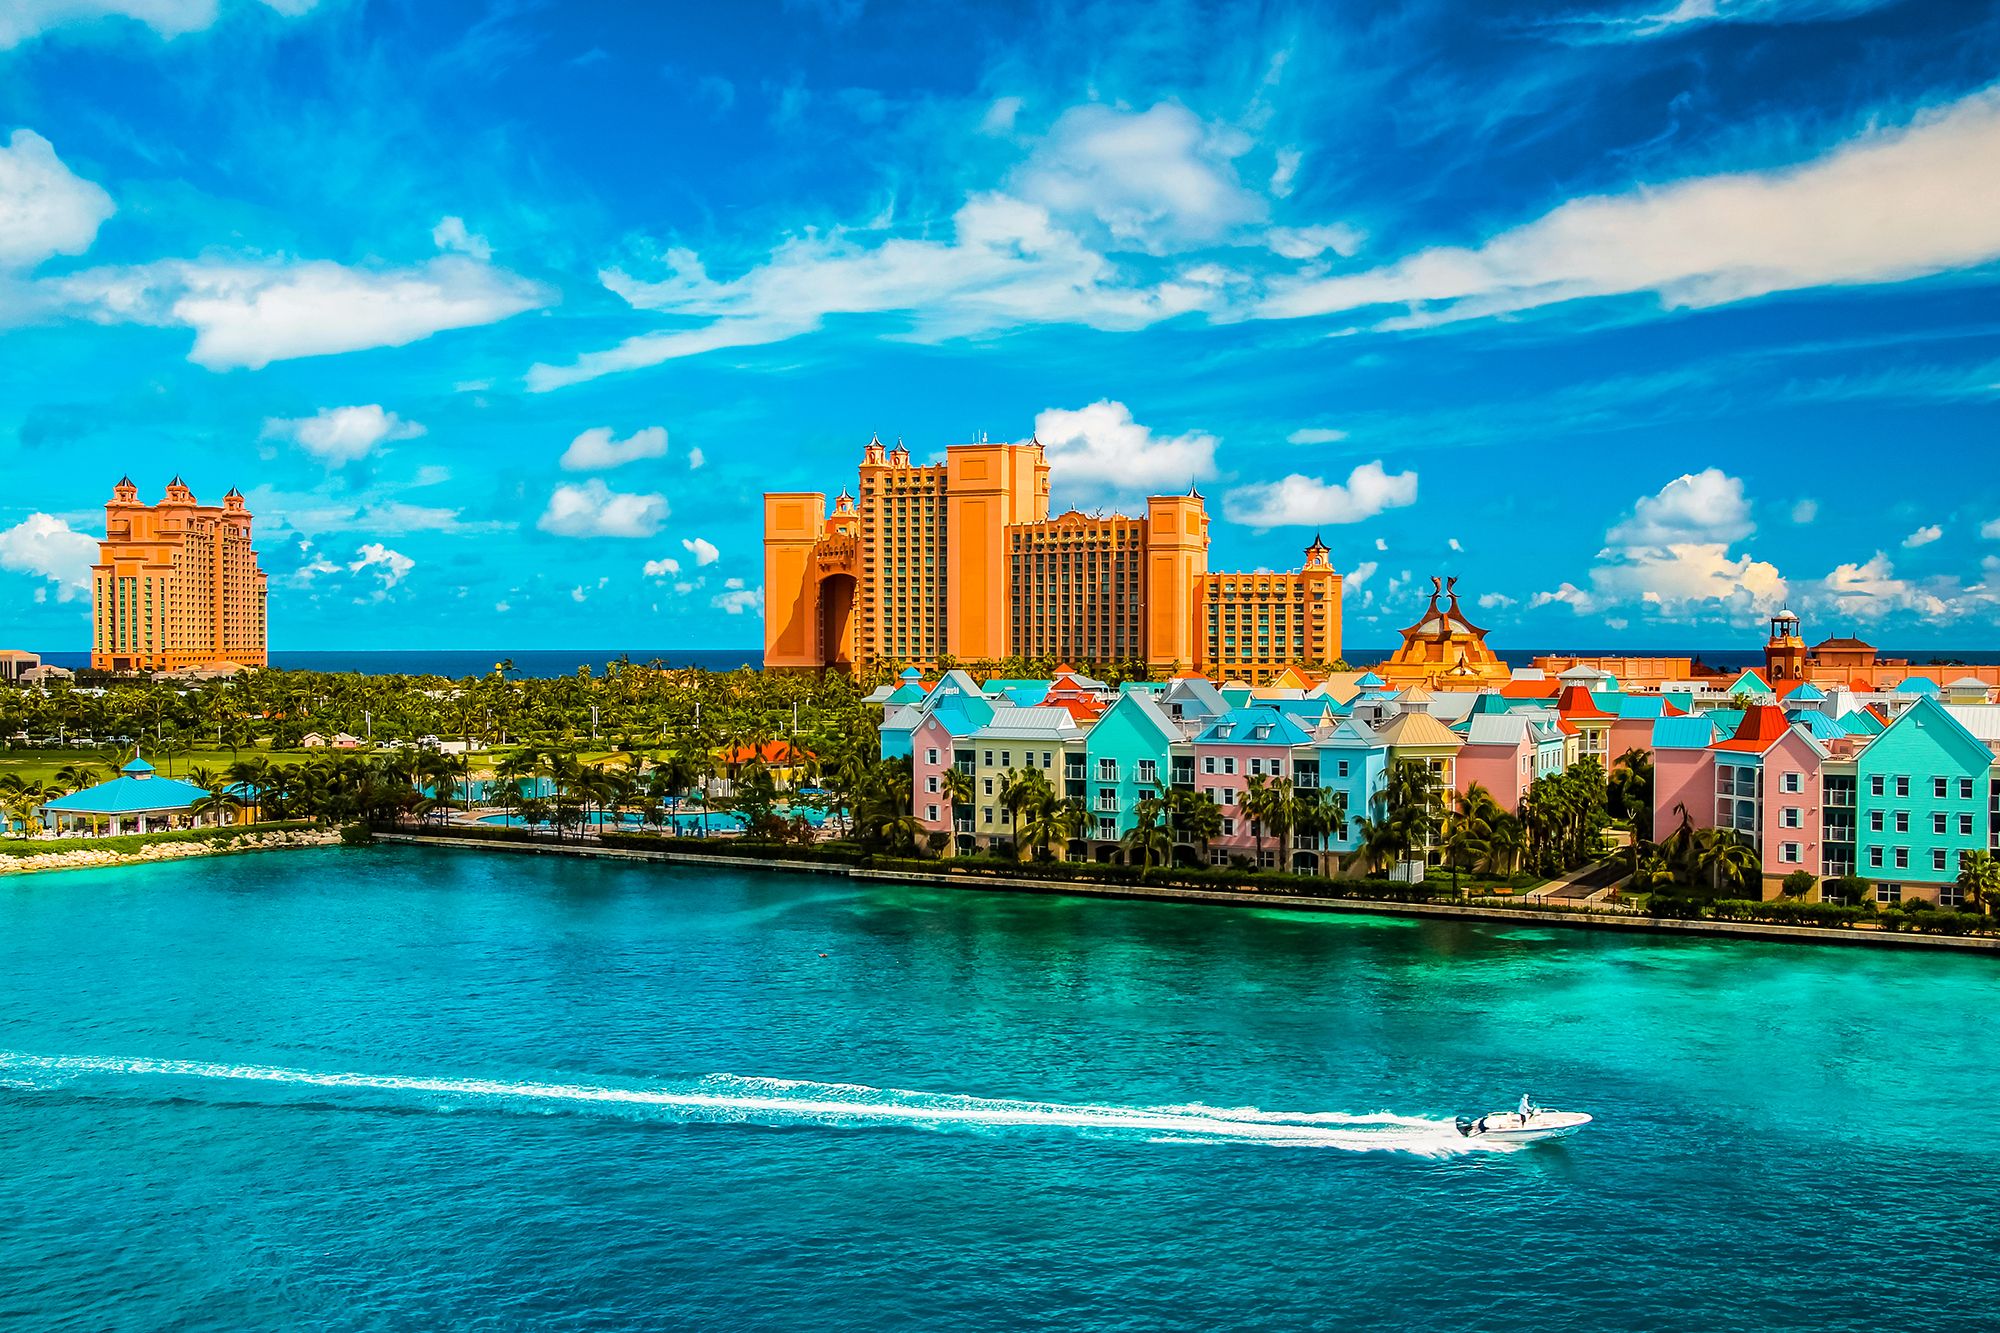 Atlantis Casino Bahamas Nassau